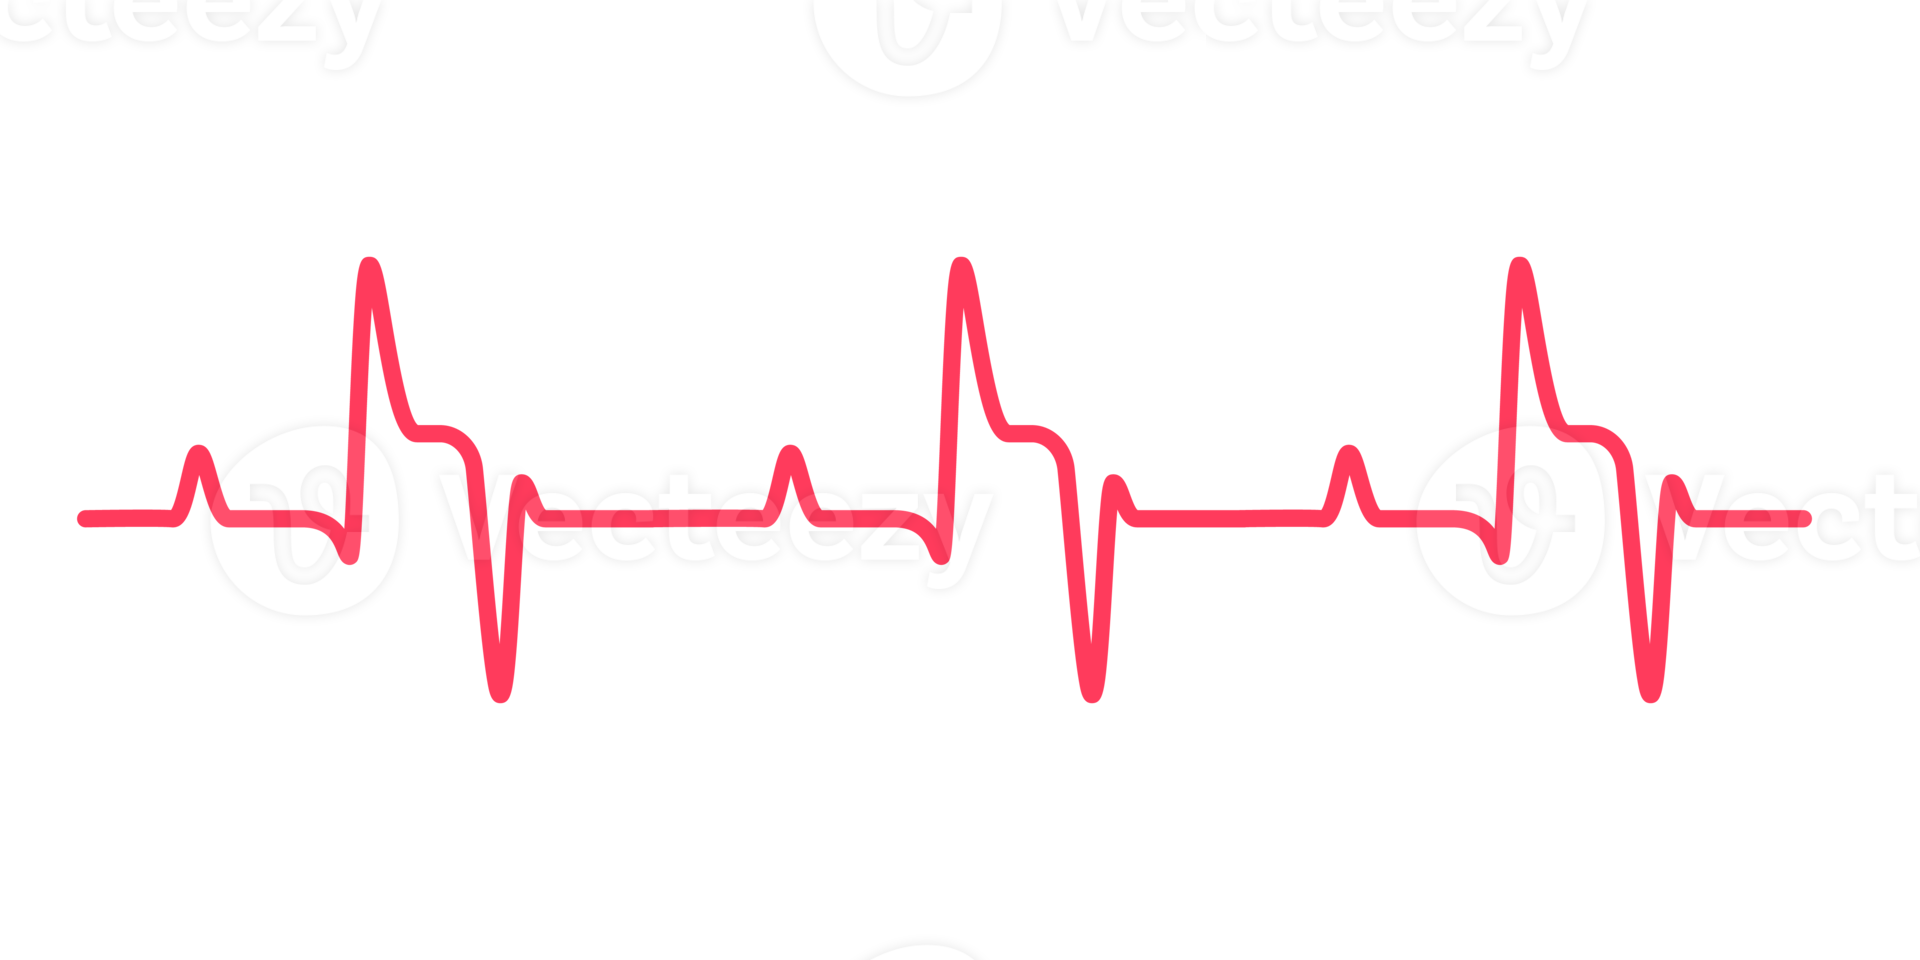 coração ritmo gráfico verificação seu batimento cardiaco para diagnóstico png